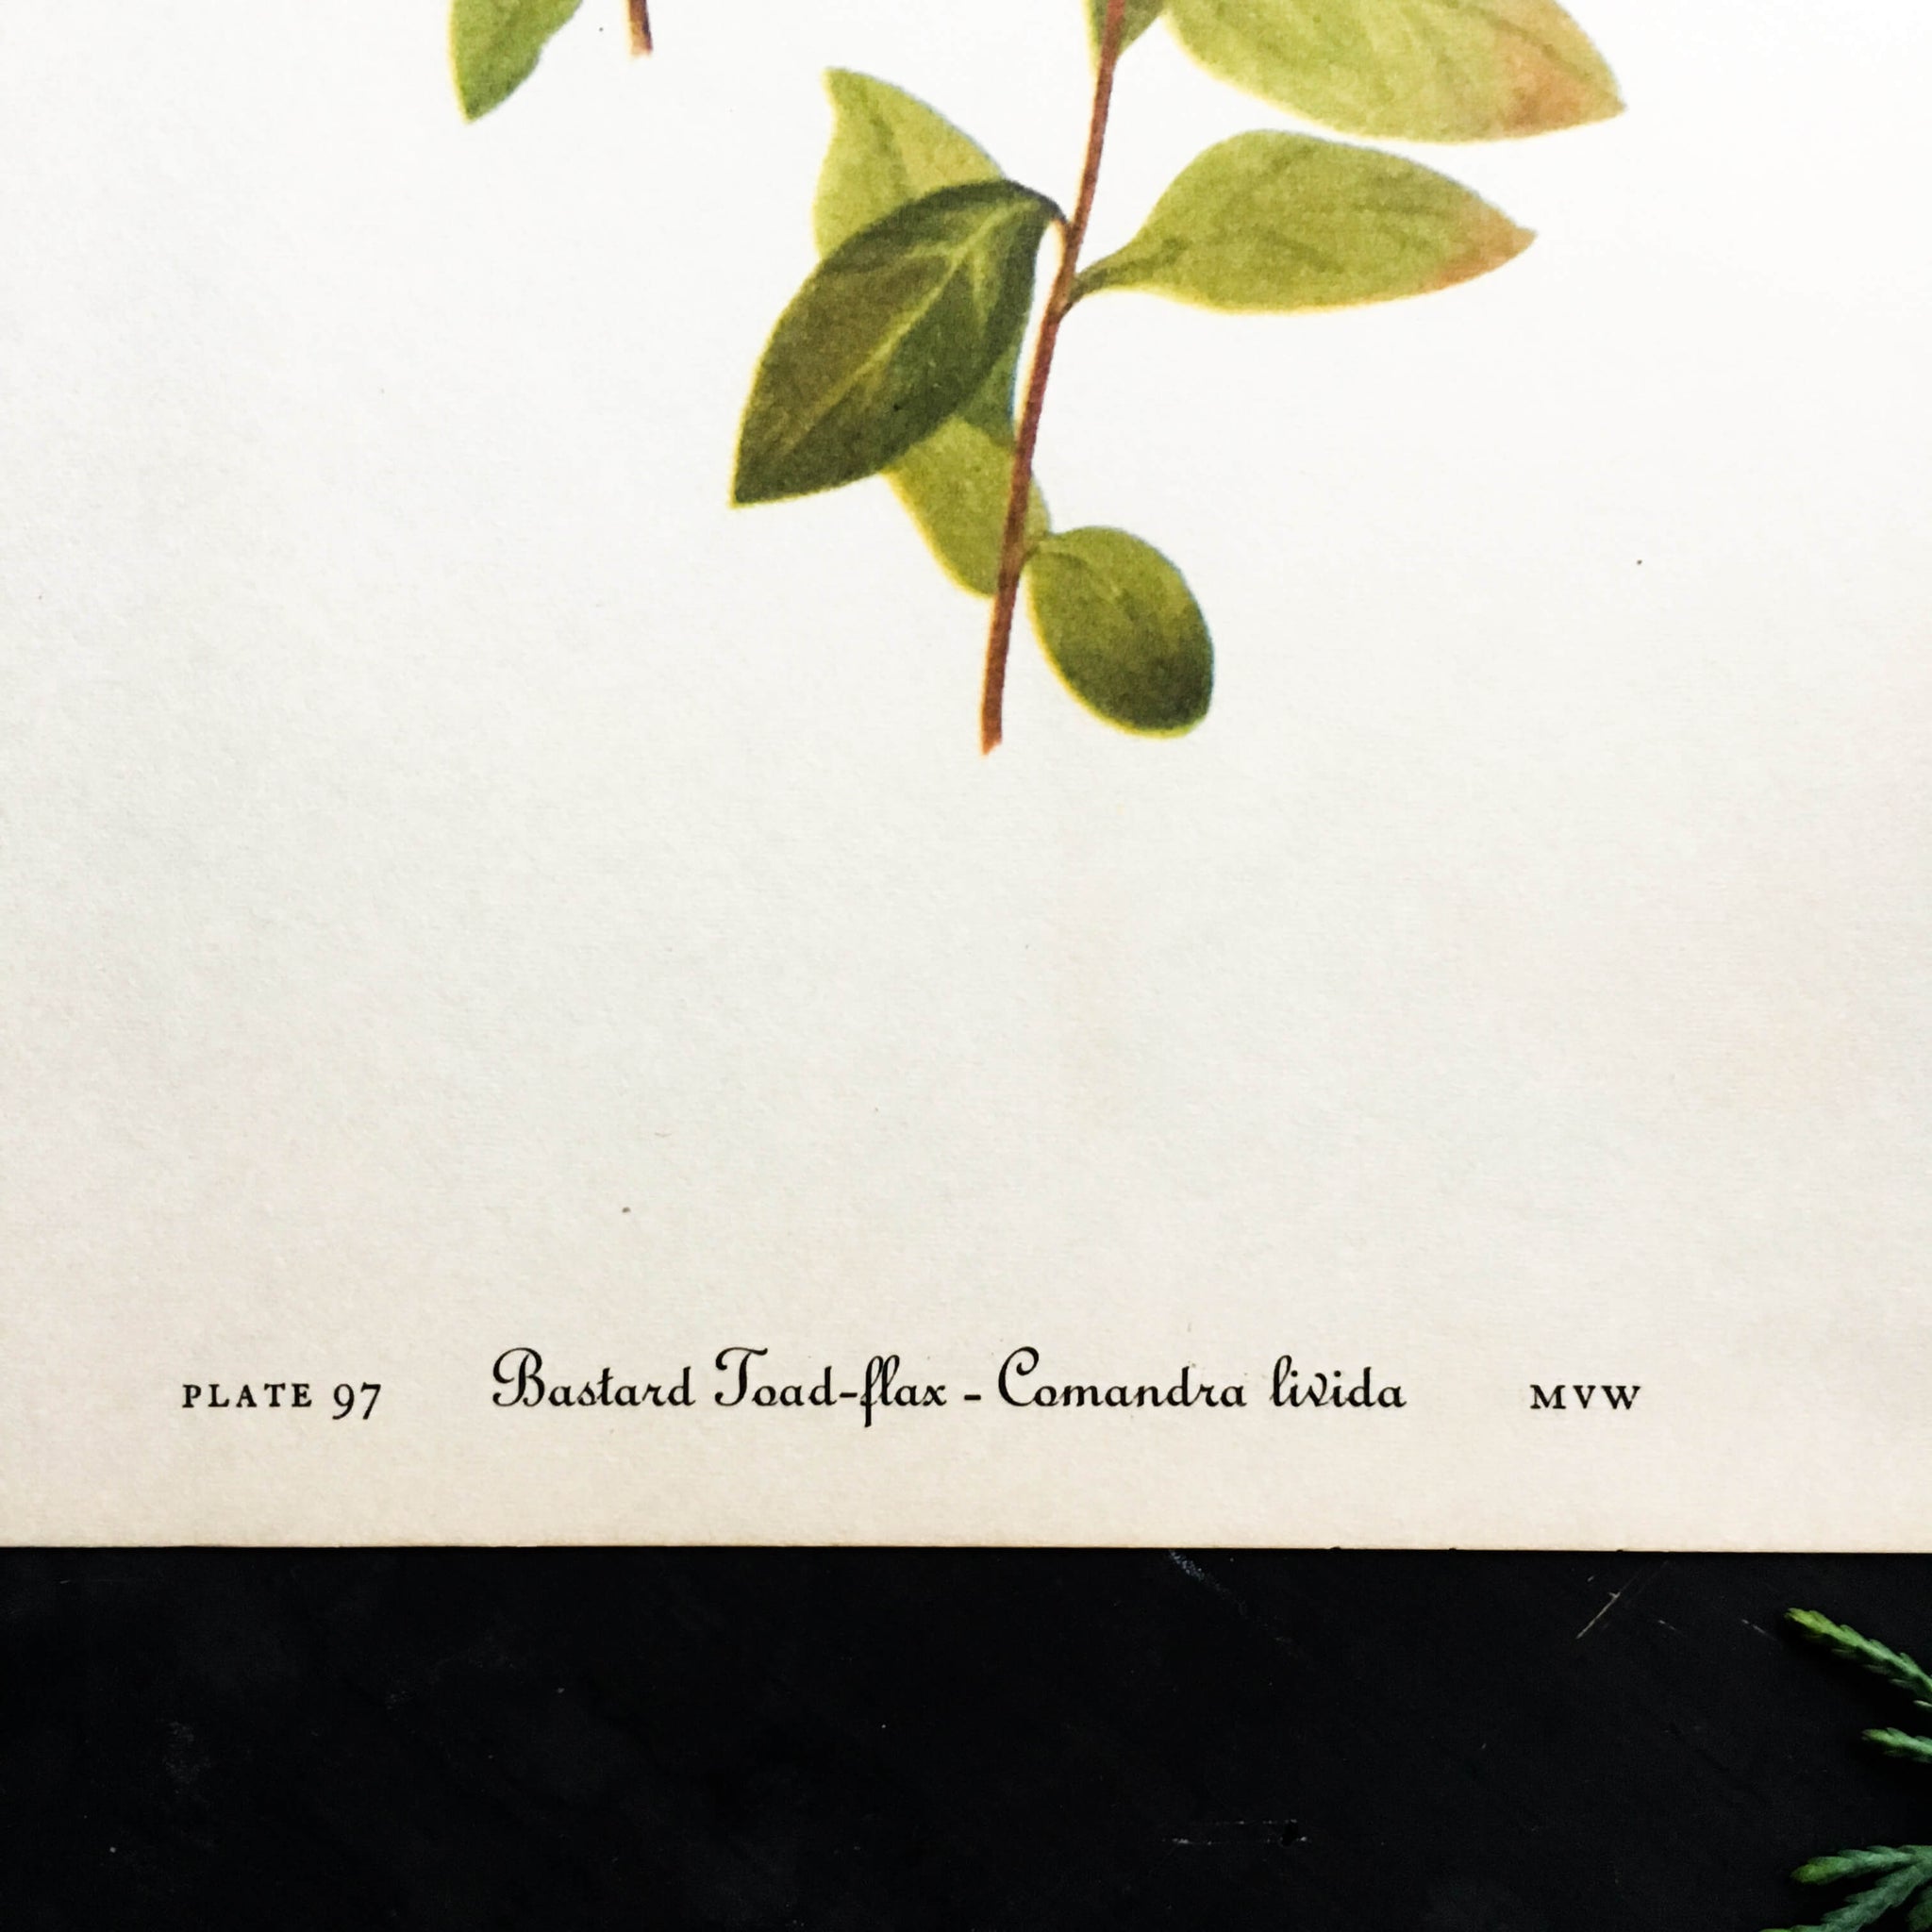 Vintage Mistletoe Botanical Print - Mistletoe and Bastard Toad-flax Plant Prints -1950s Wild Flowers of America Bookplates